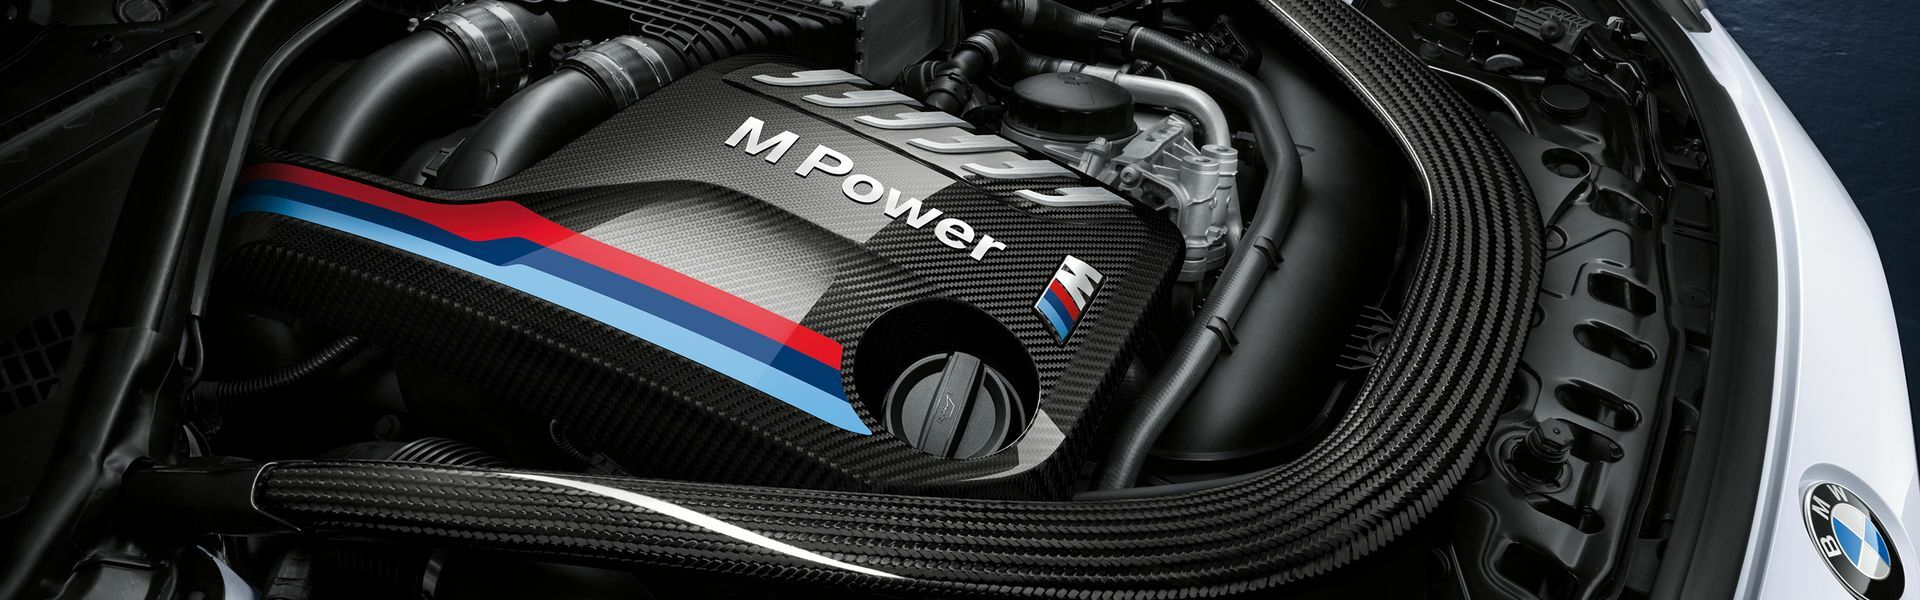 Zvýšení výkonu/ Softwarové úpravy/ Drobné performance díly pro automobil Porsche 911 GT3/RS 997 FL 4.0